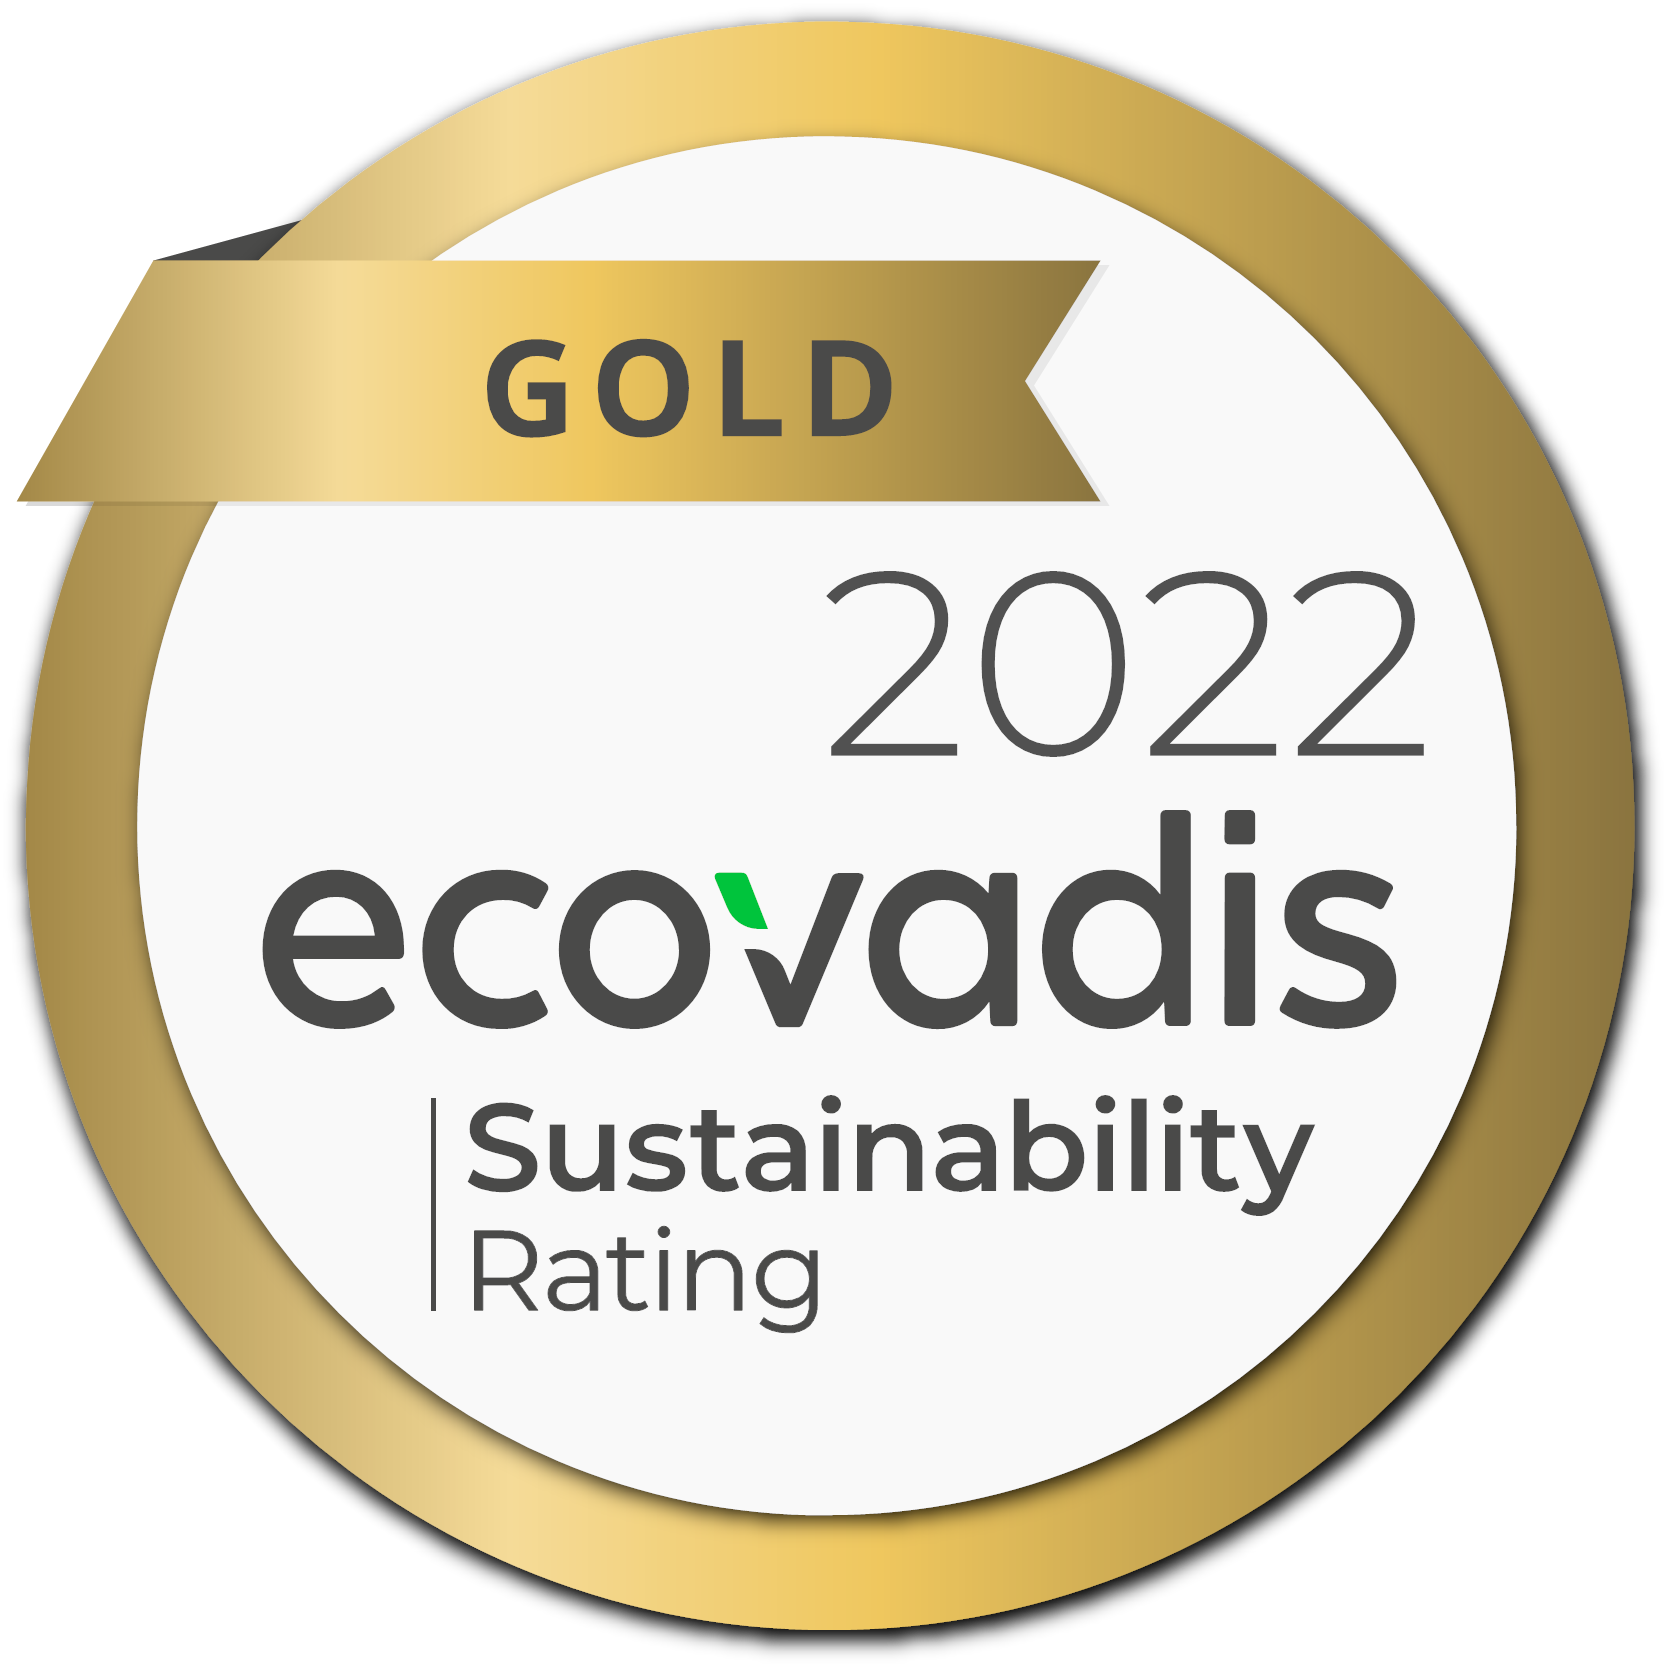 Billede af ecovadis gold 2022 certifikat